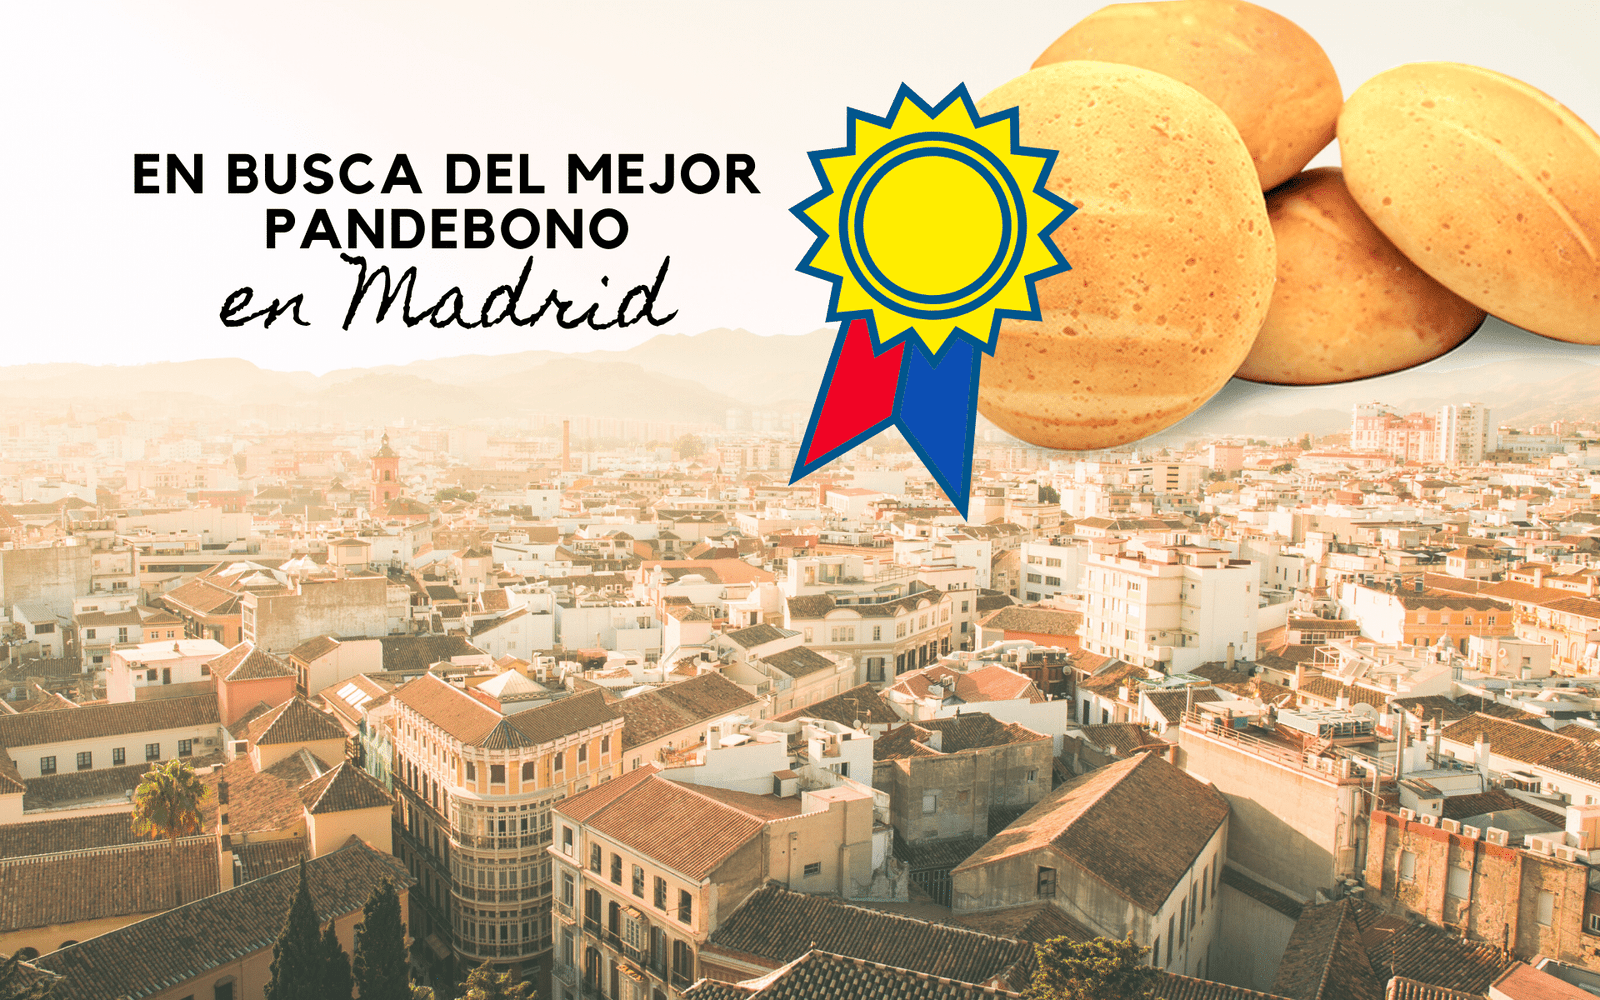 Featured image for “En busca del mejor pandebono en Madrid.”